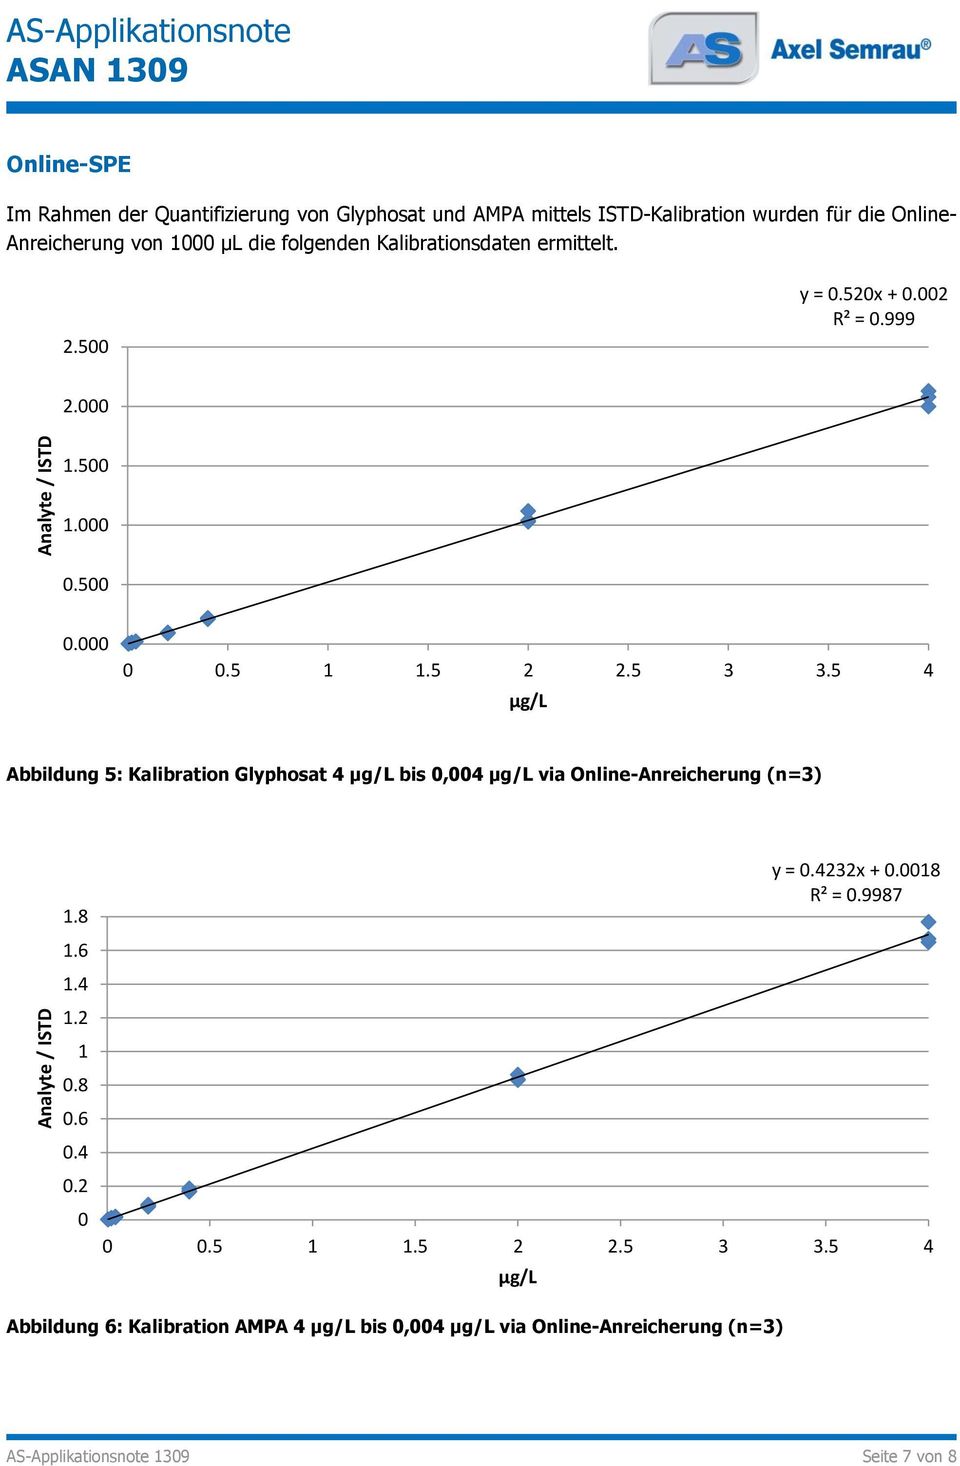 5 3 3.5 4 µg/l Abbildung 5: Kalibration Glyphosat 4 µg/l bis 0,004 µg/l via Online-Anreicherung (n=3) 1.8 1.6 1.4 1.2 1 0.8 0.6 0.4 0.2 0 y = 0.4232x + 0.